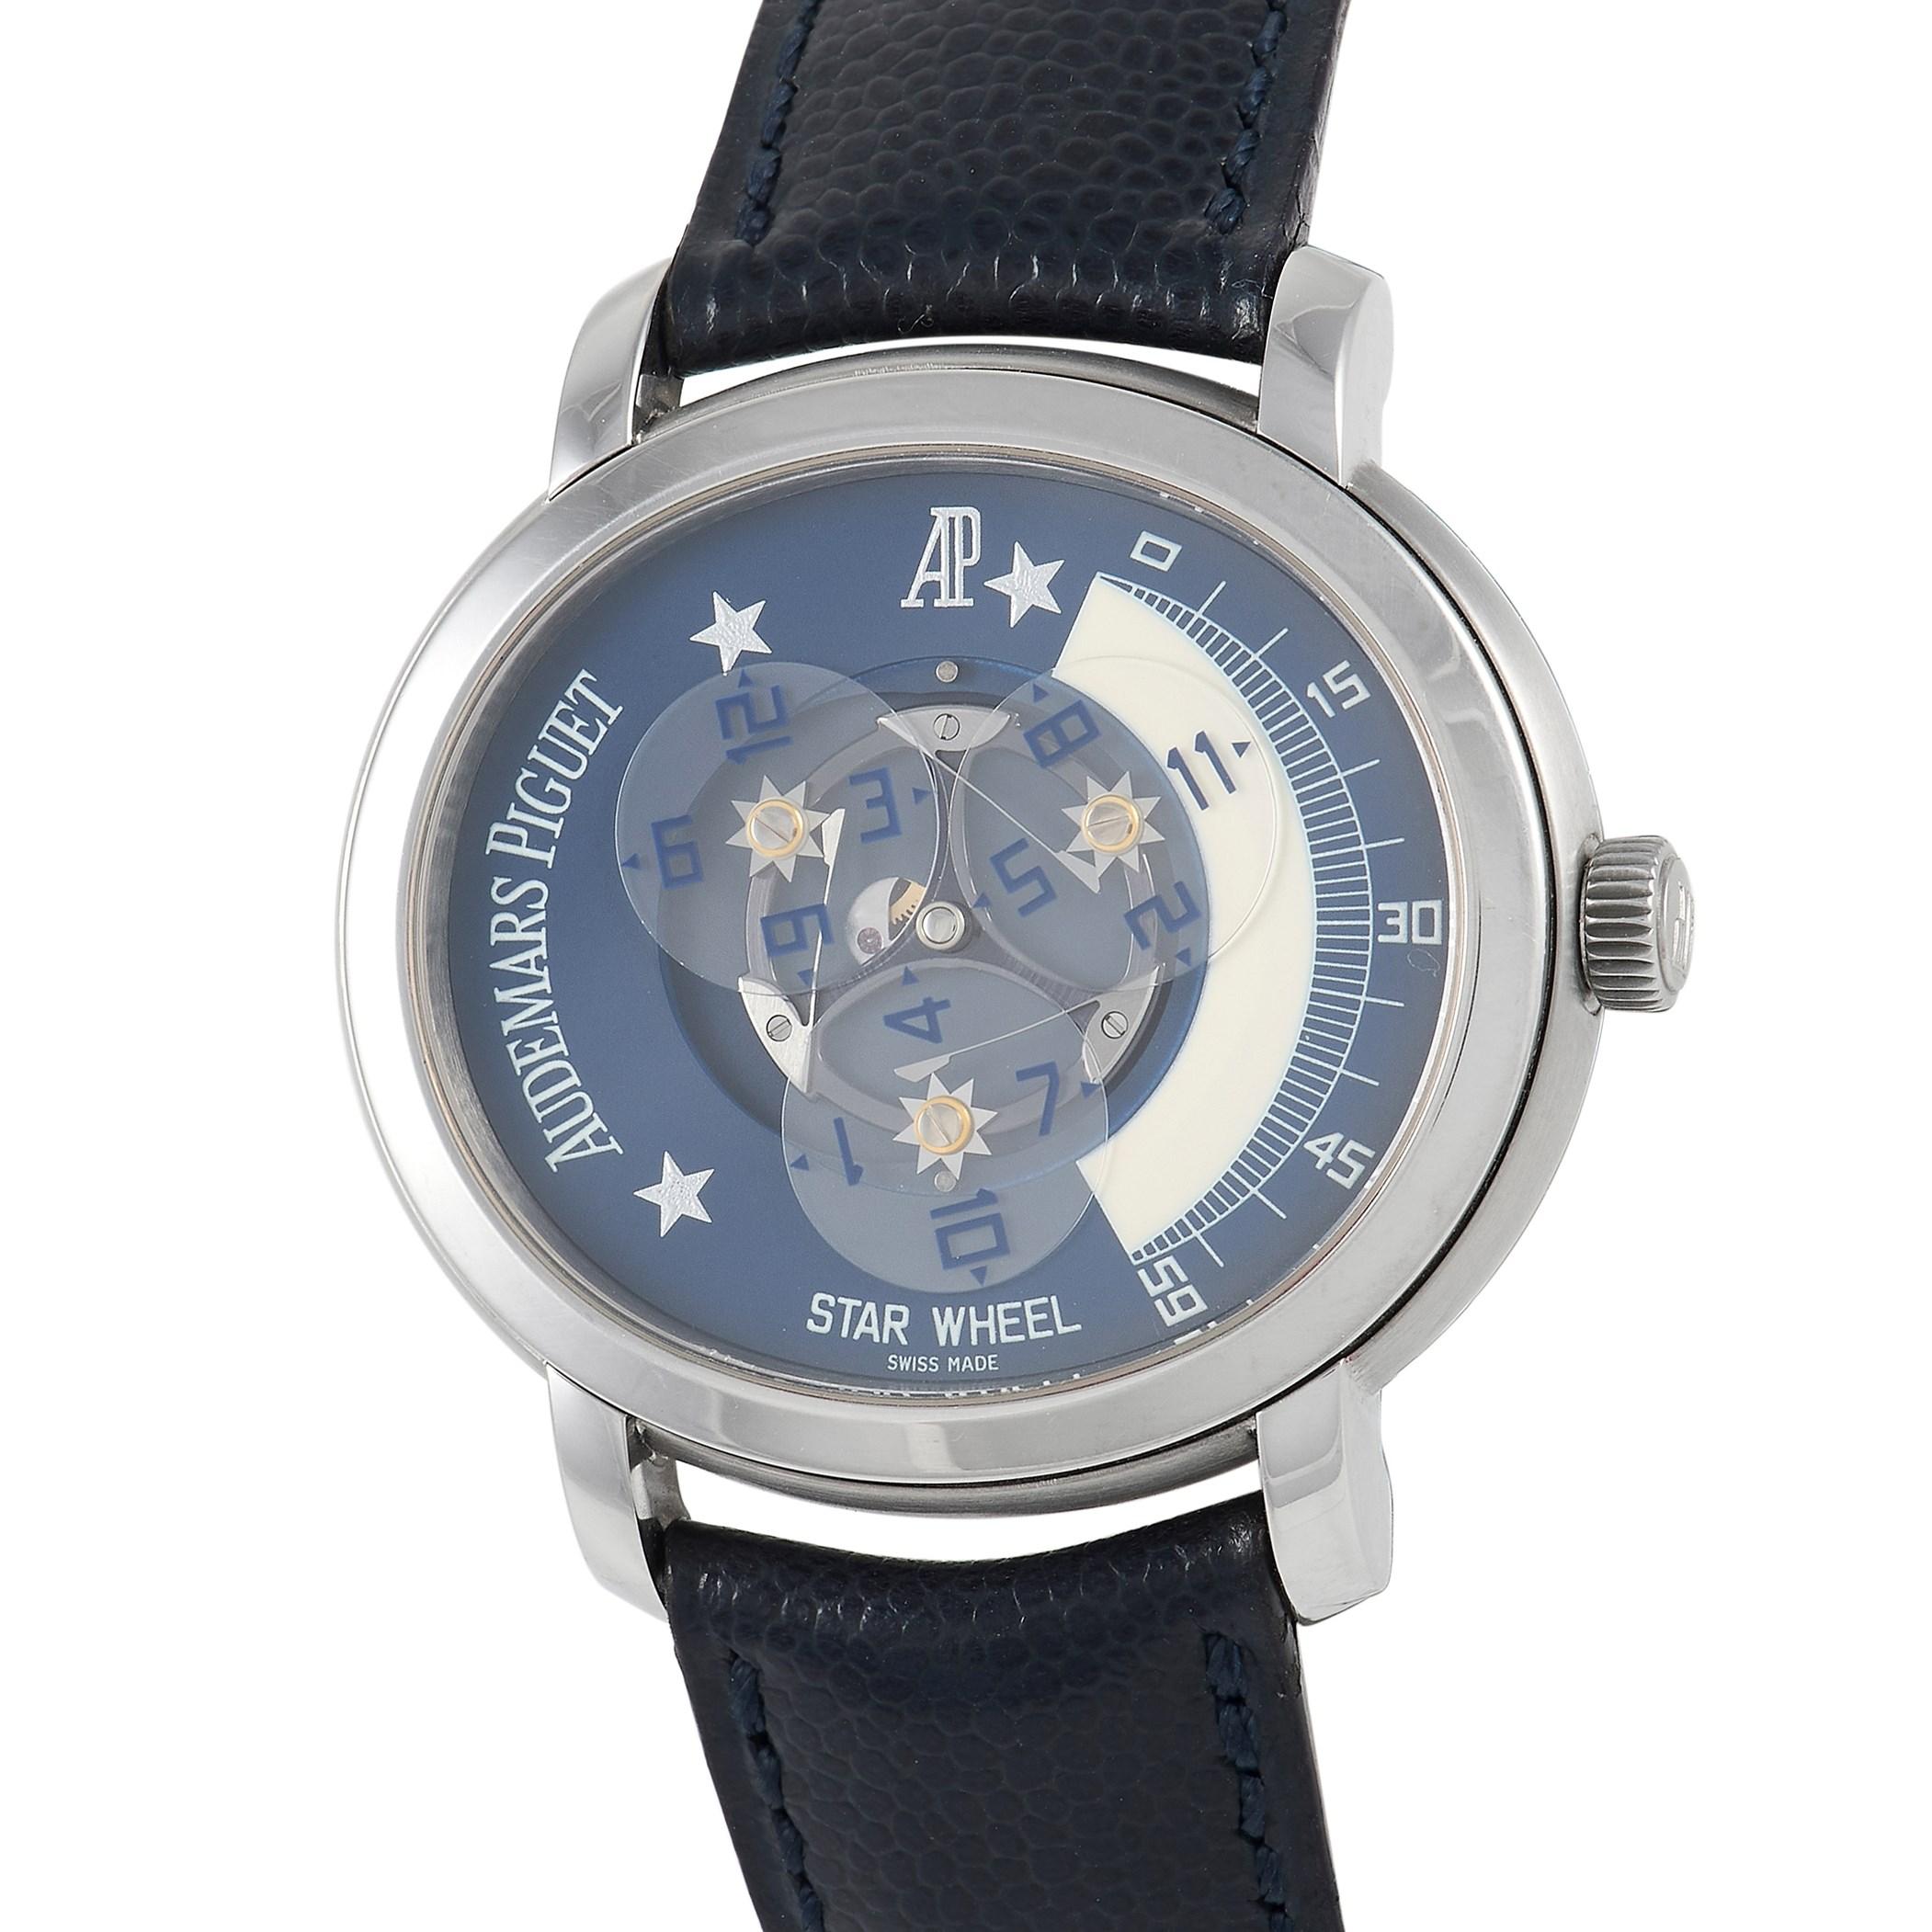 Auf den ersten Blick wirkt die Audemars Piguet Millenary Star Wheel 258985 wie eine elegante Uhr. Es ist kompliziert, aber nicht laut. Die großartige Komplikation und das raffinierte Aussehen werden Sie faszinieren. Dieser Zeitmesser verfügt über